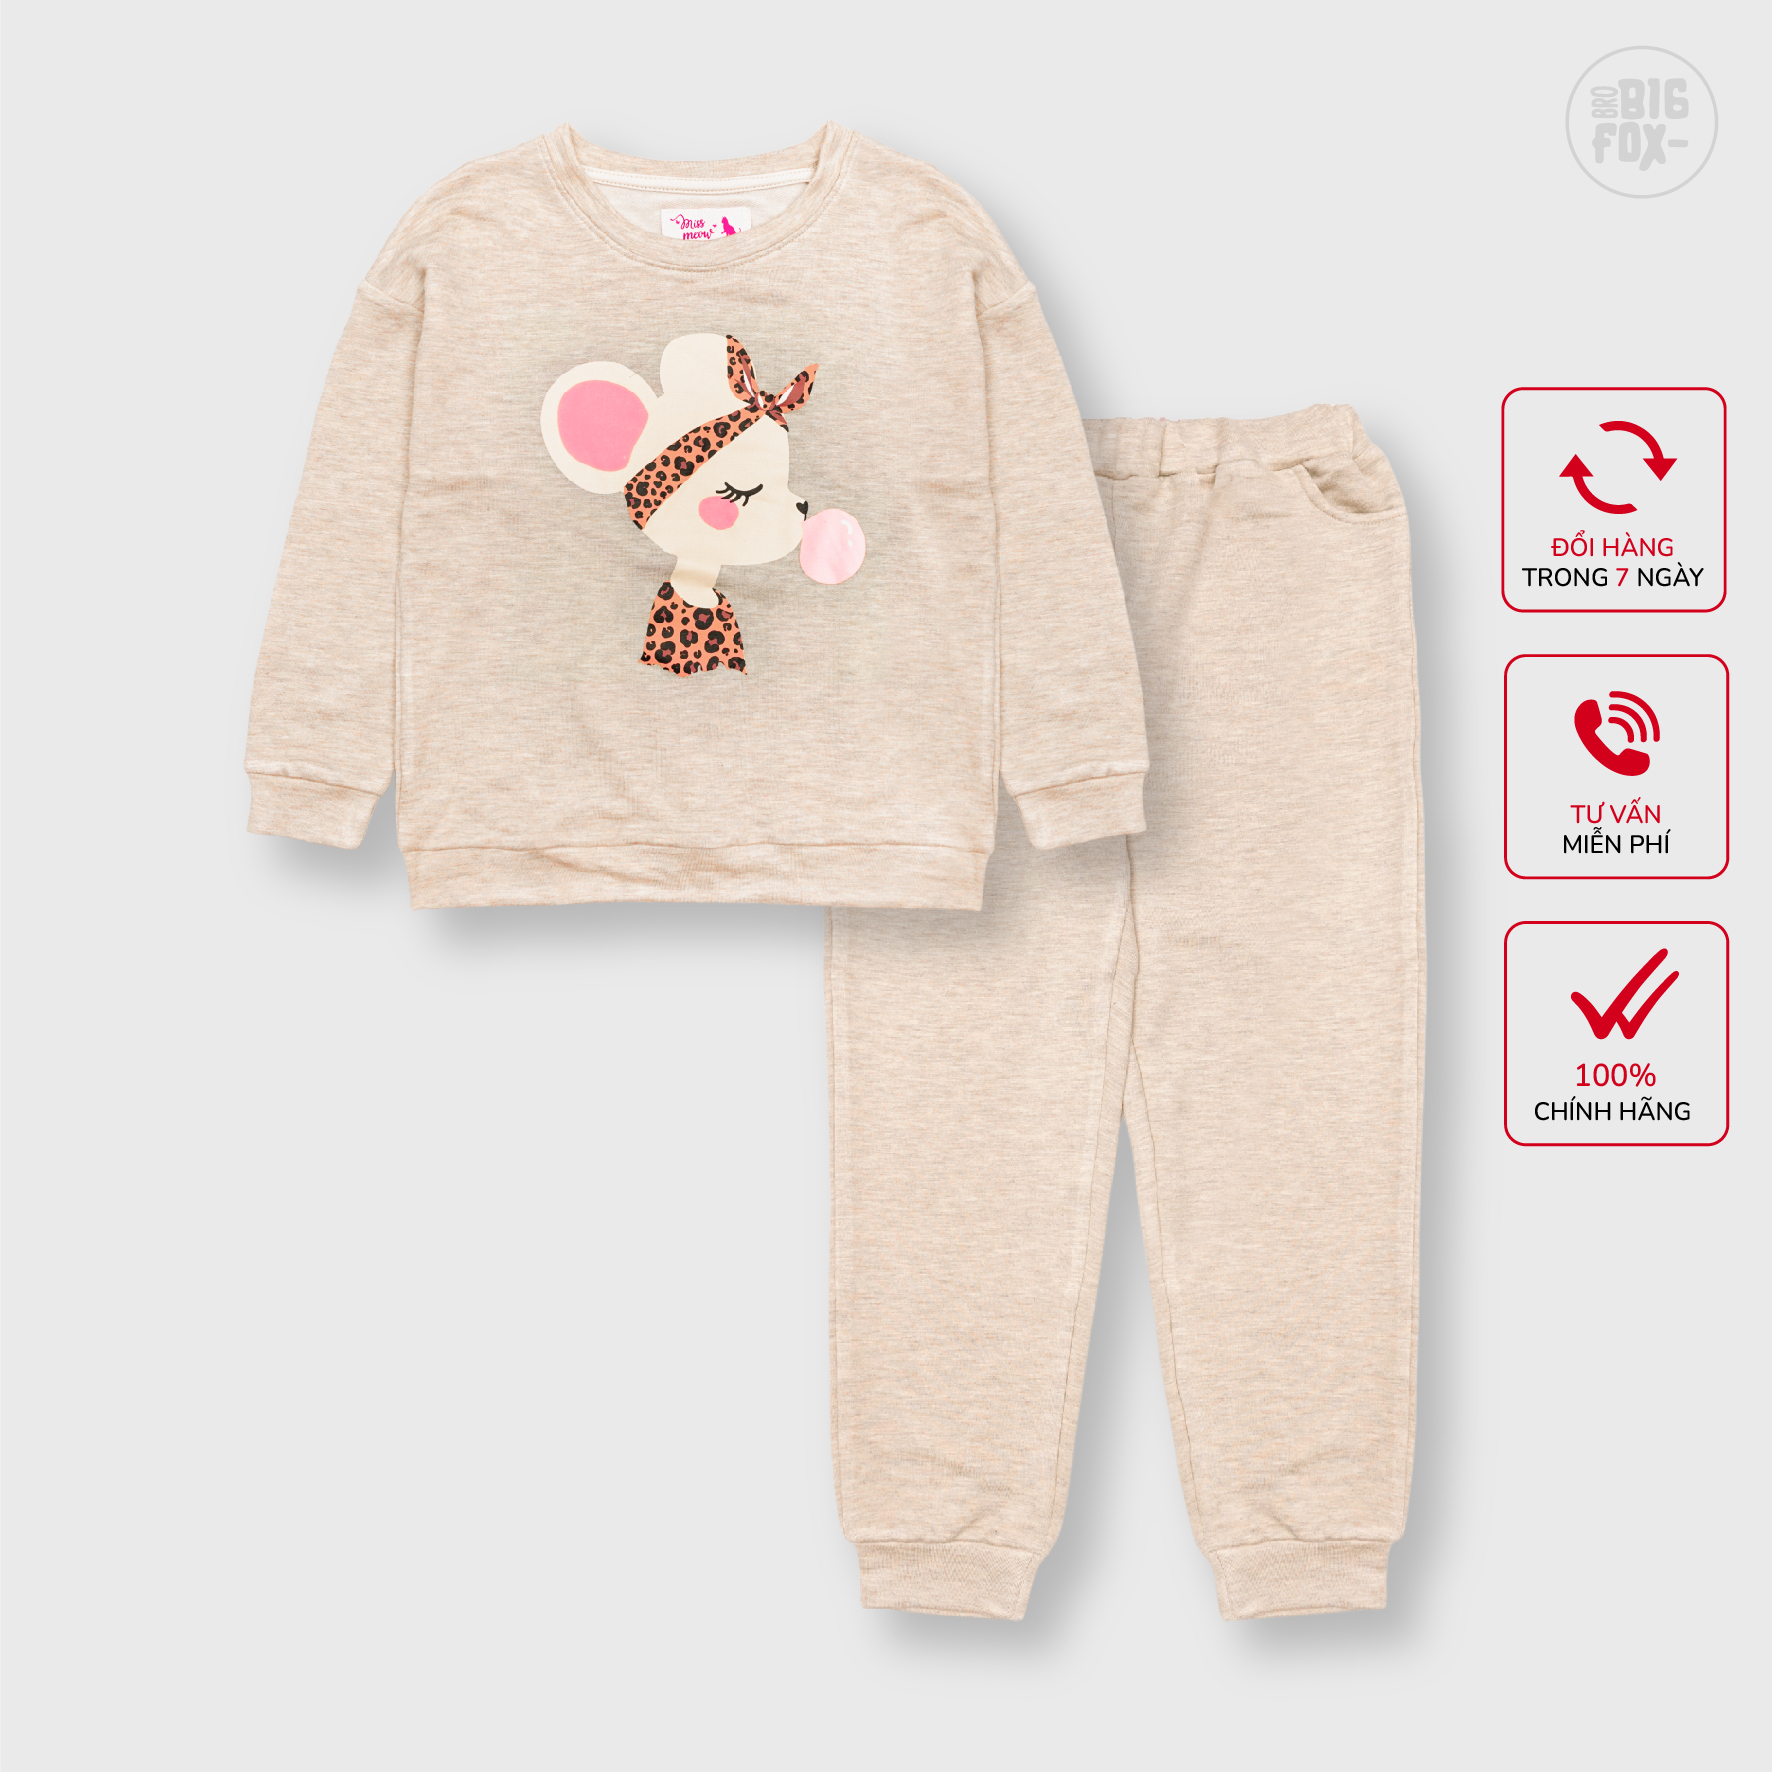 Chọn size quần áo chính xác cho bé khi mua hàng online | moby.com.vn